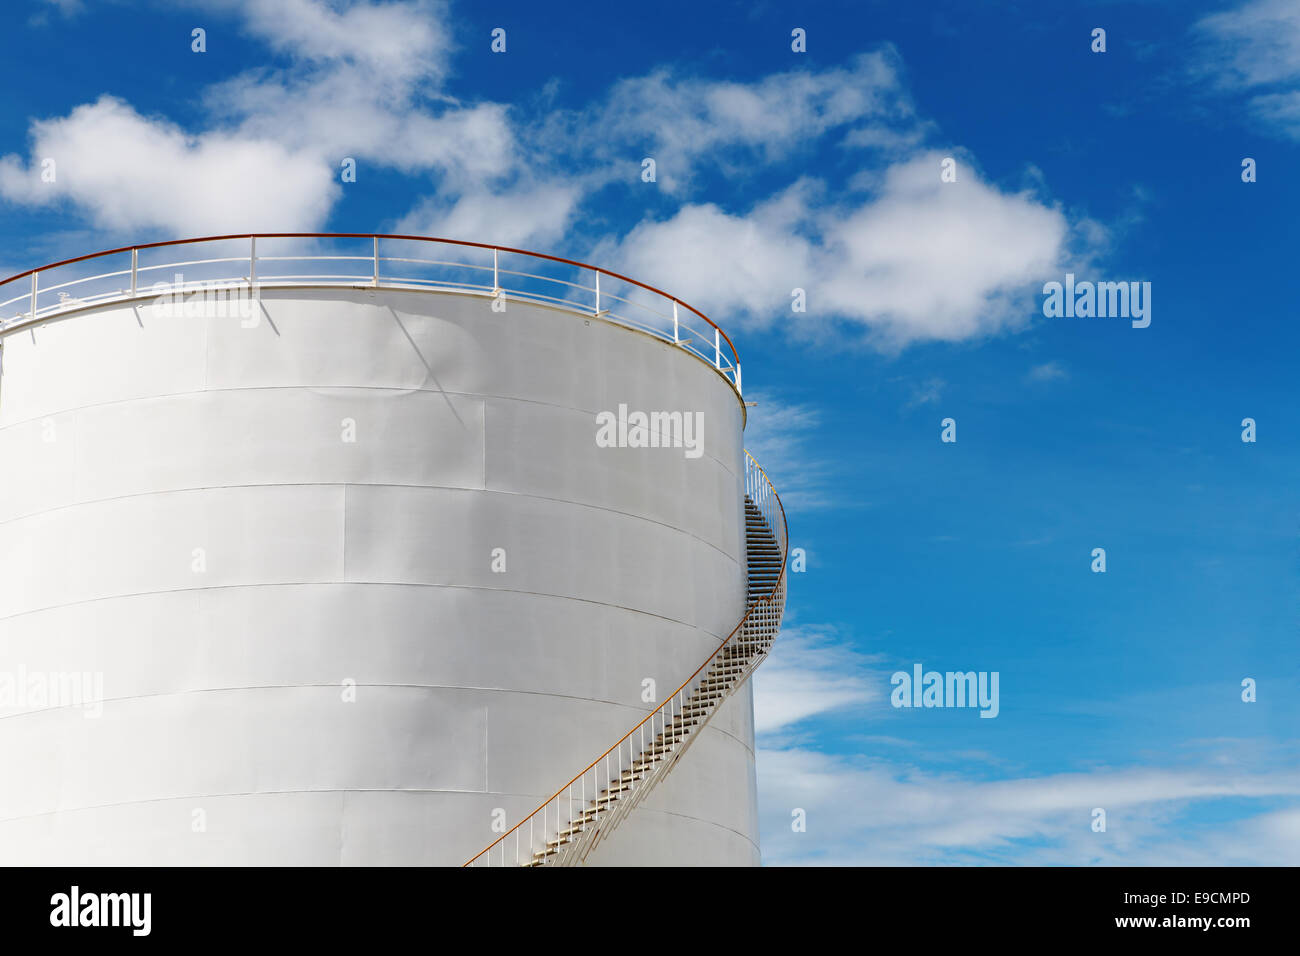 Industrielle Kraftstofftank vor blauem Himmelshintergrund Stockfoto